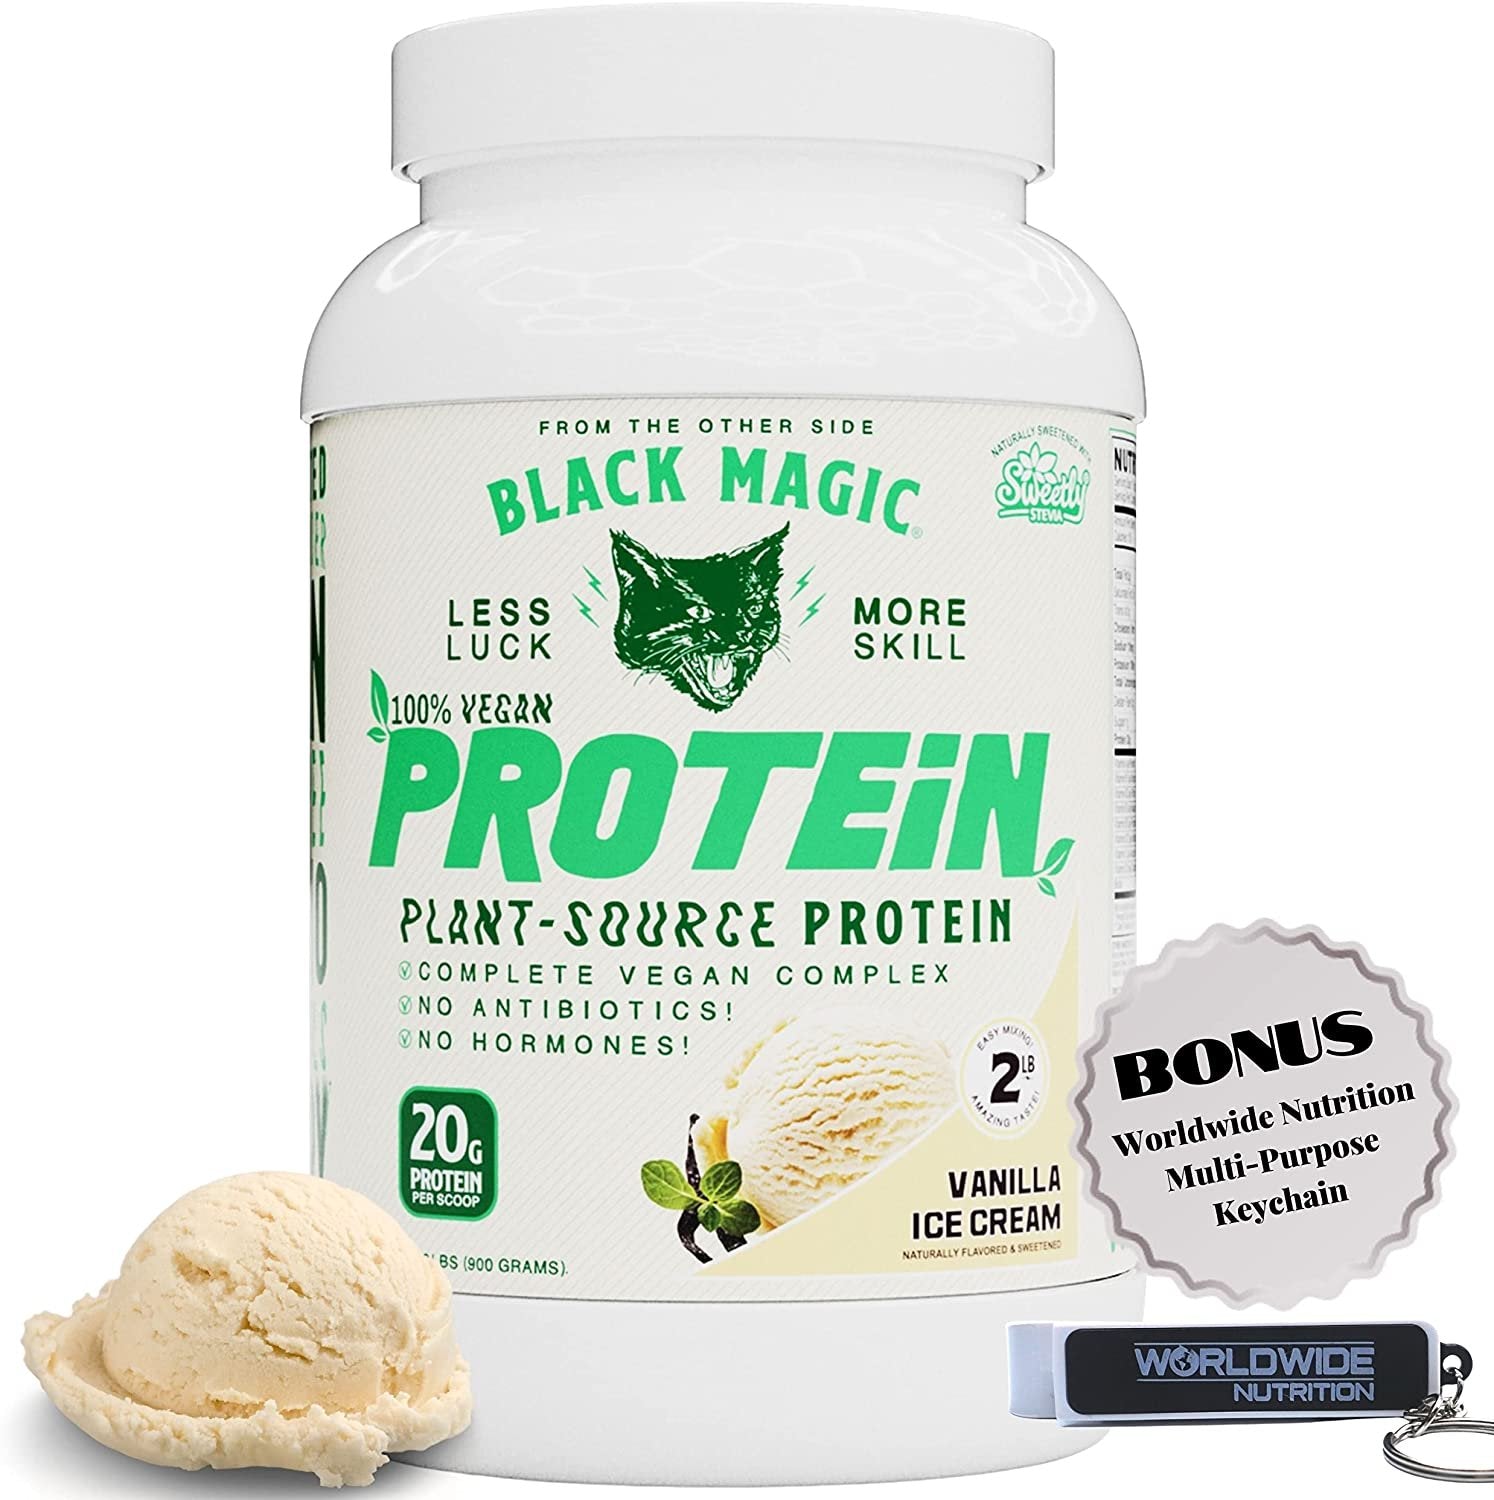 Vanilla Ice Cream Black Magic Multi-Source Protein - Whey, Egg, and Ca